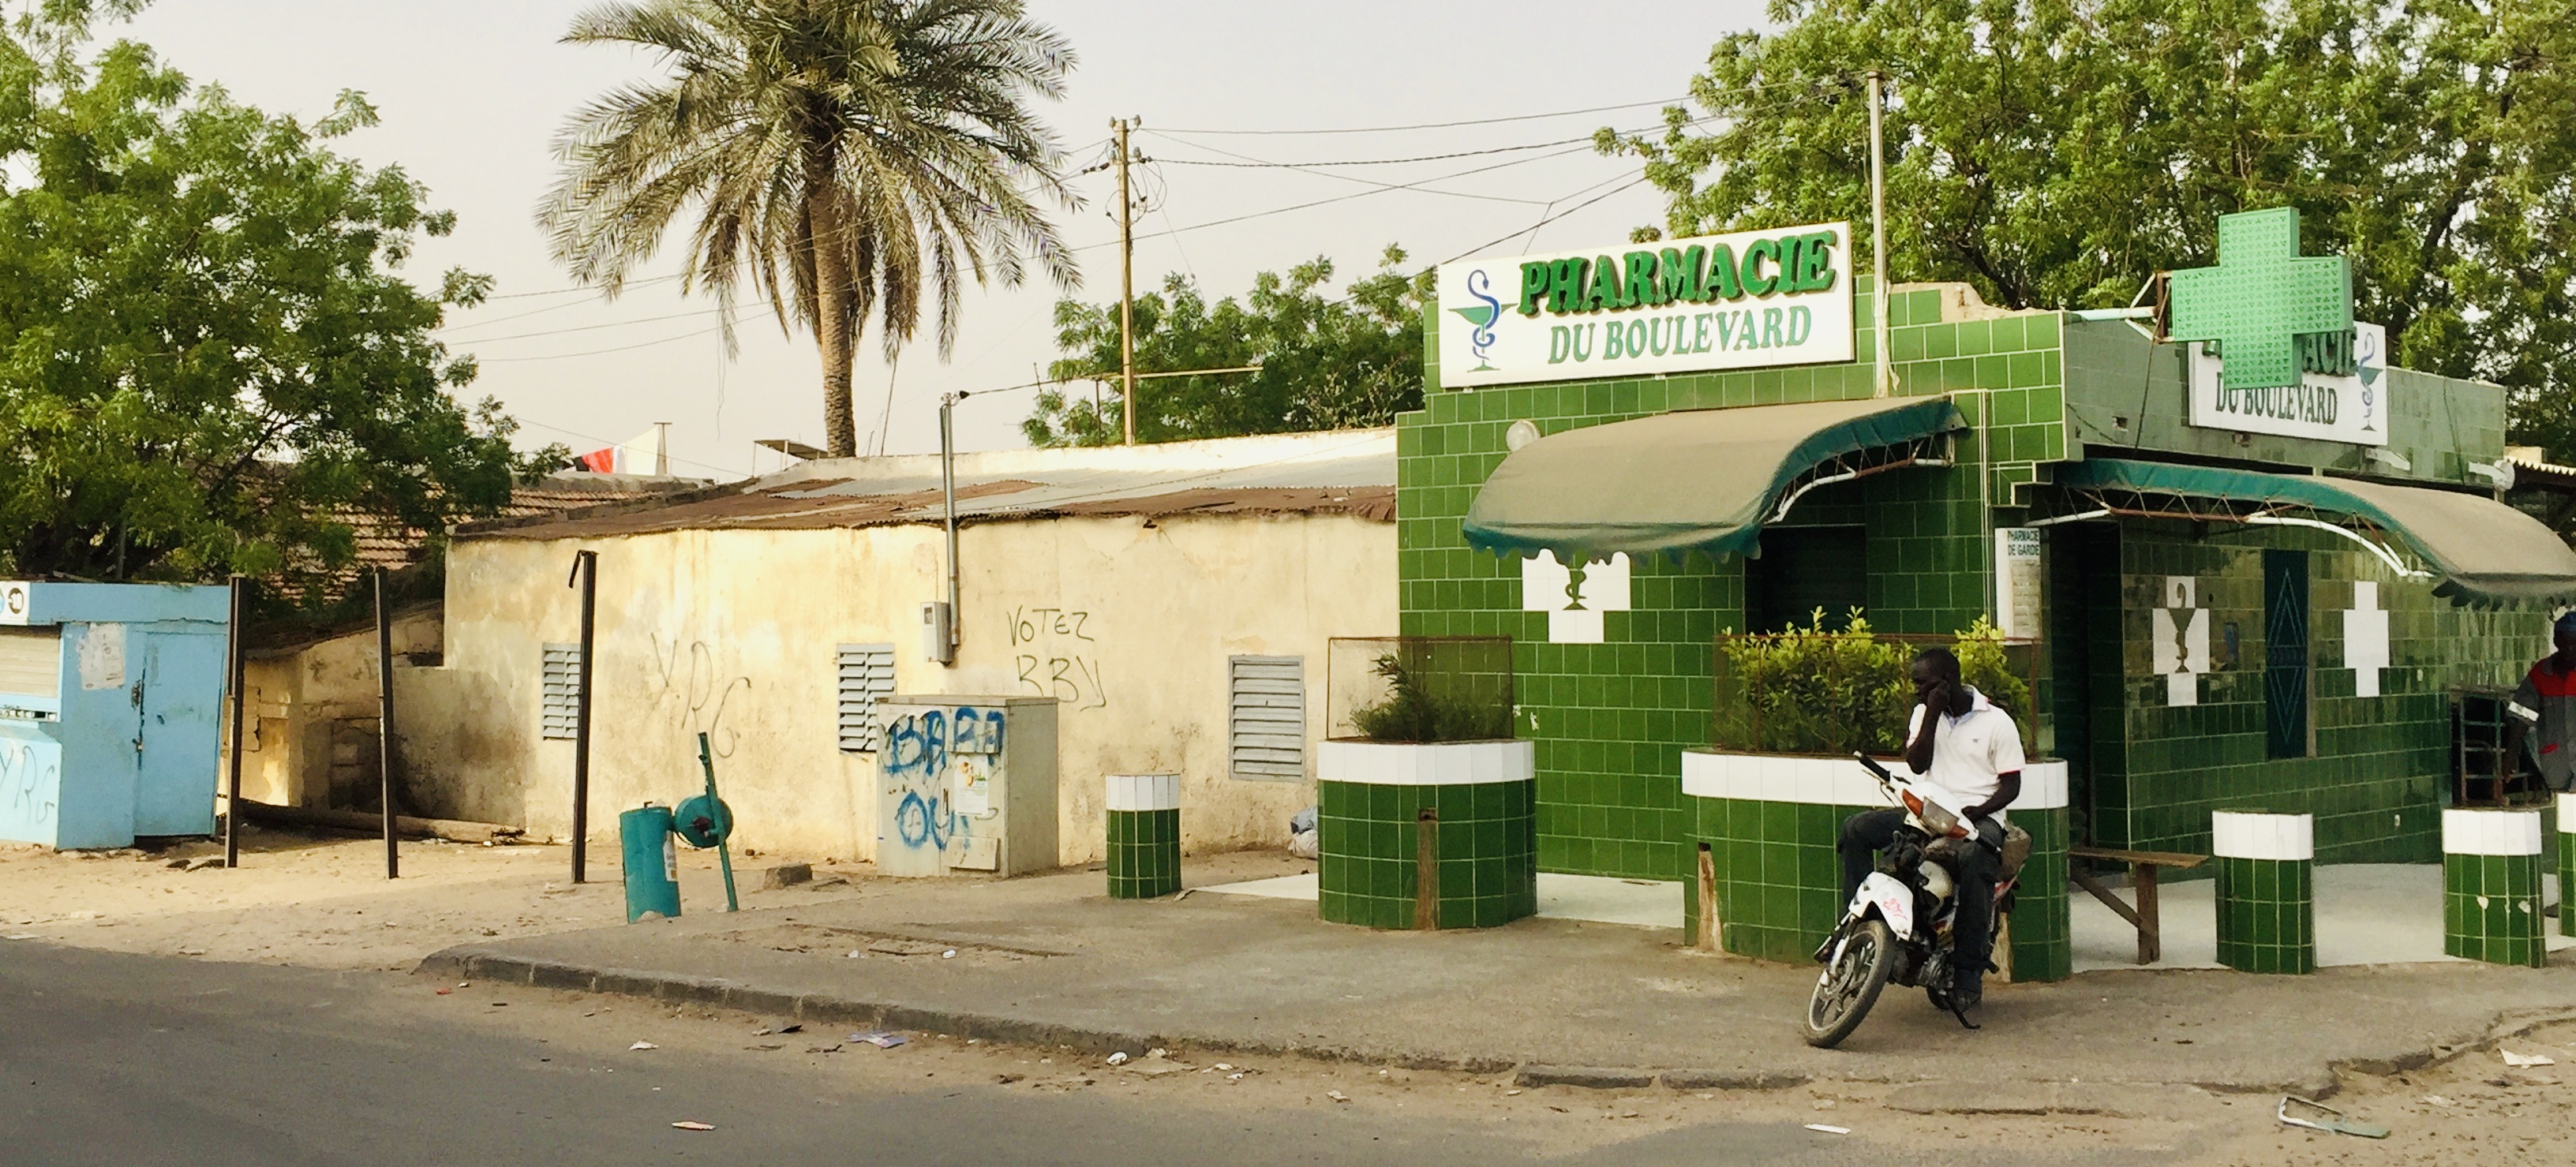 Journée sans pharmacies : interdit de tomber au Sénégal ce mercredi 22 mai...  toutes les pharmacies seront fermées